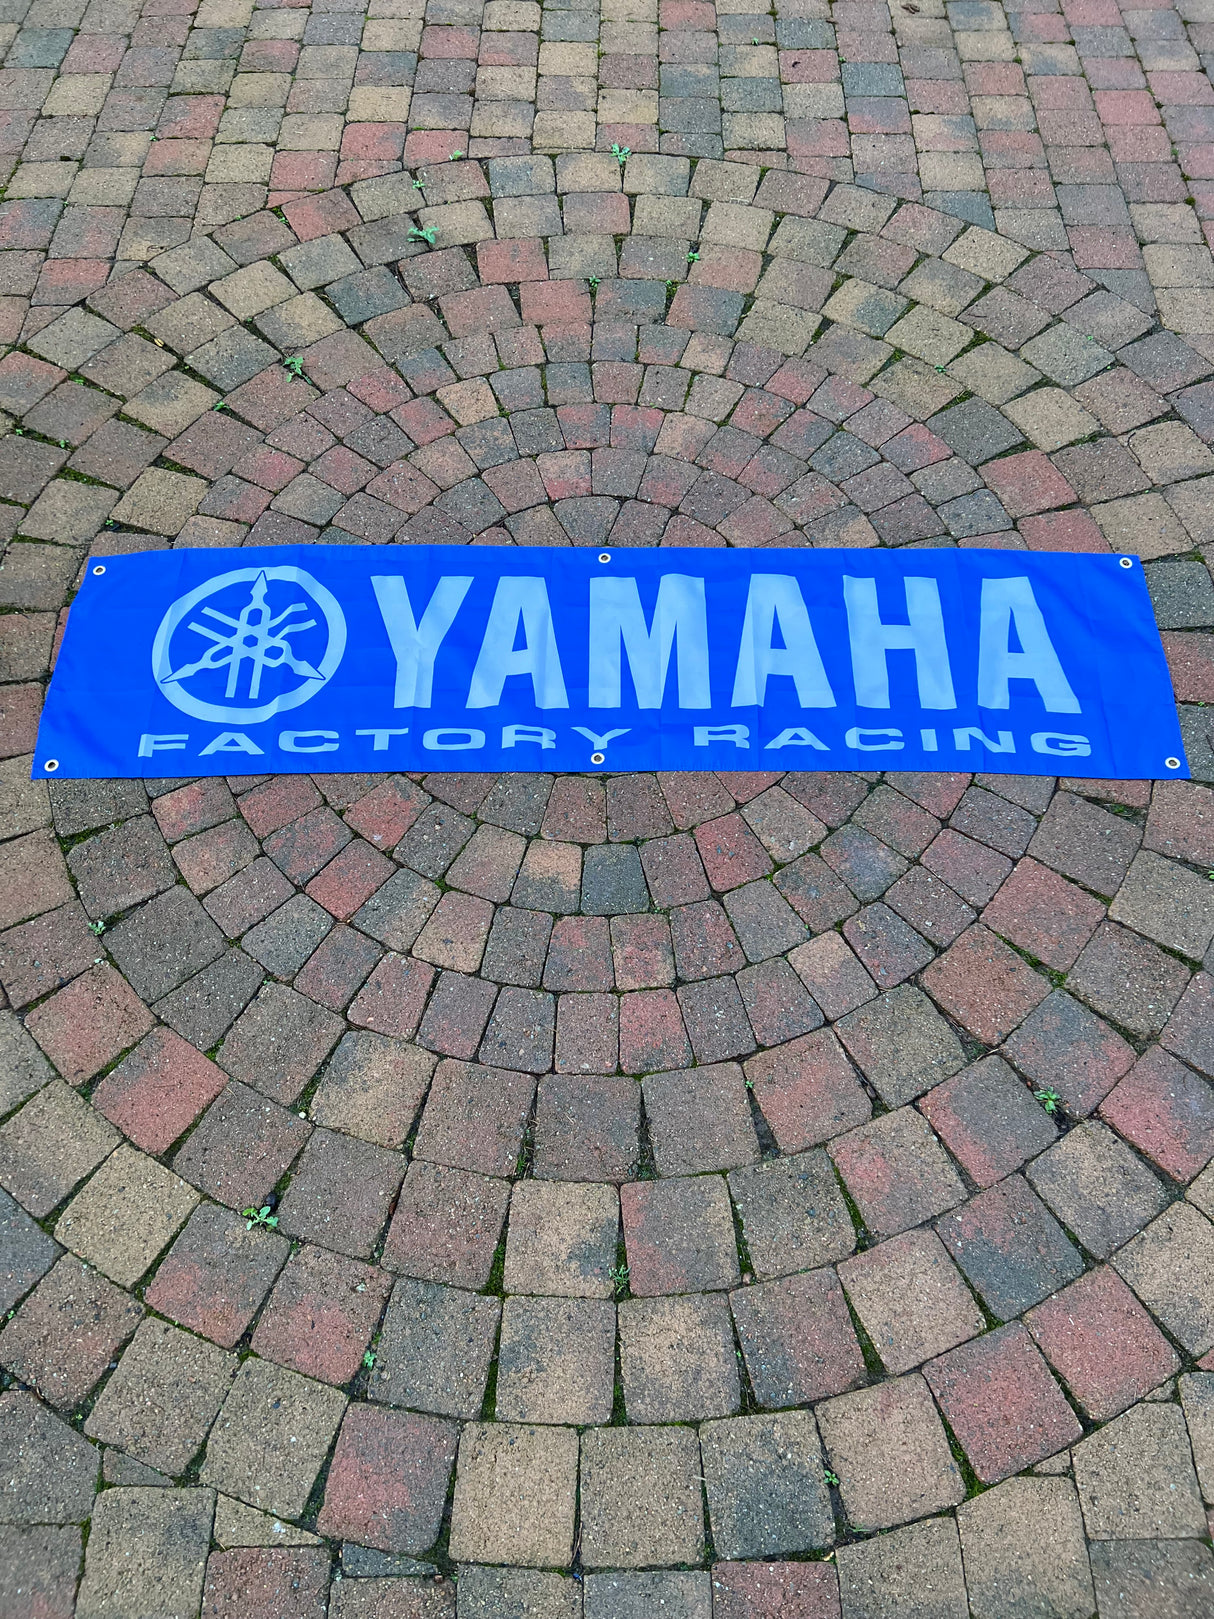 Yamaha Banner